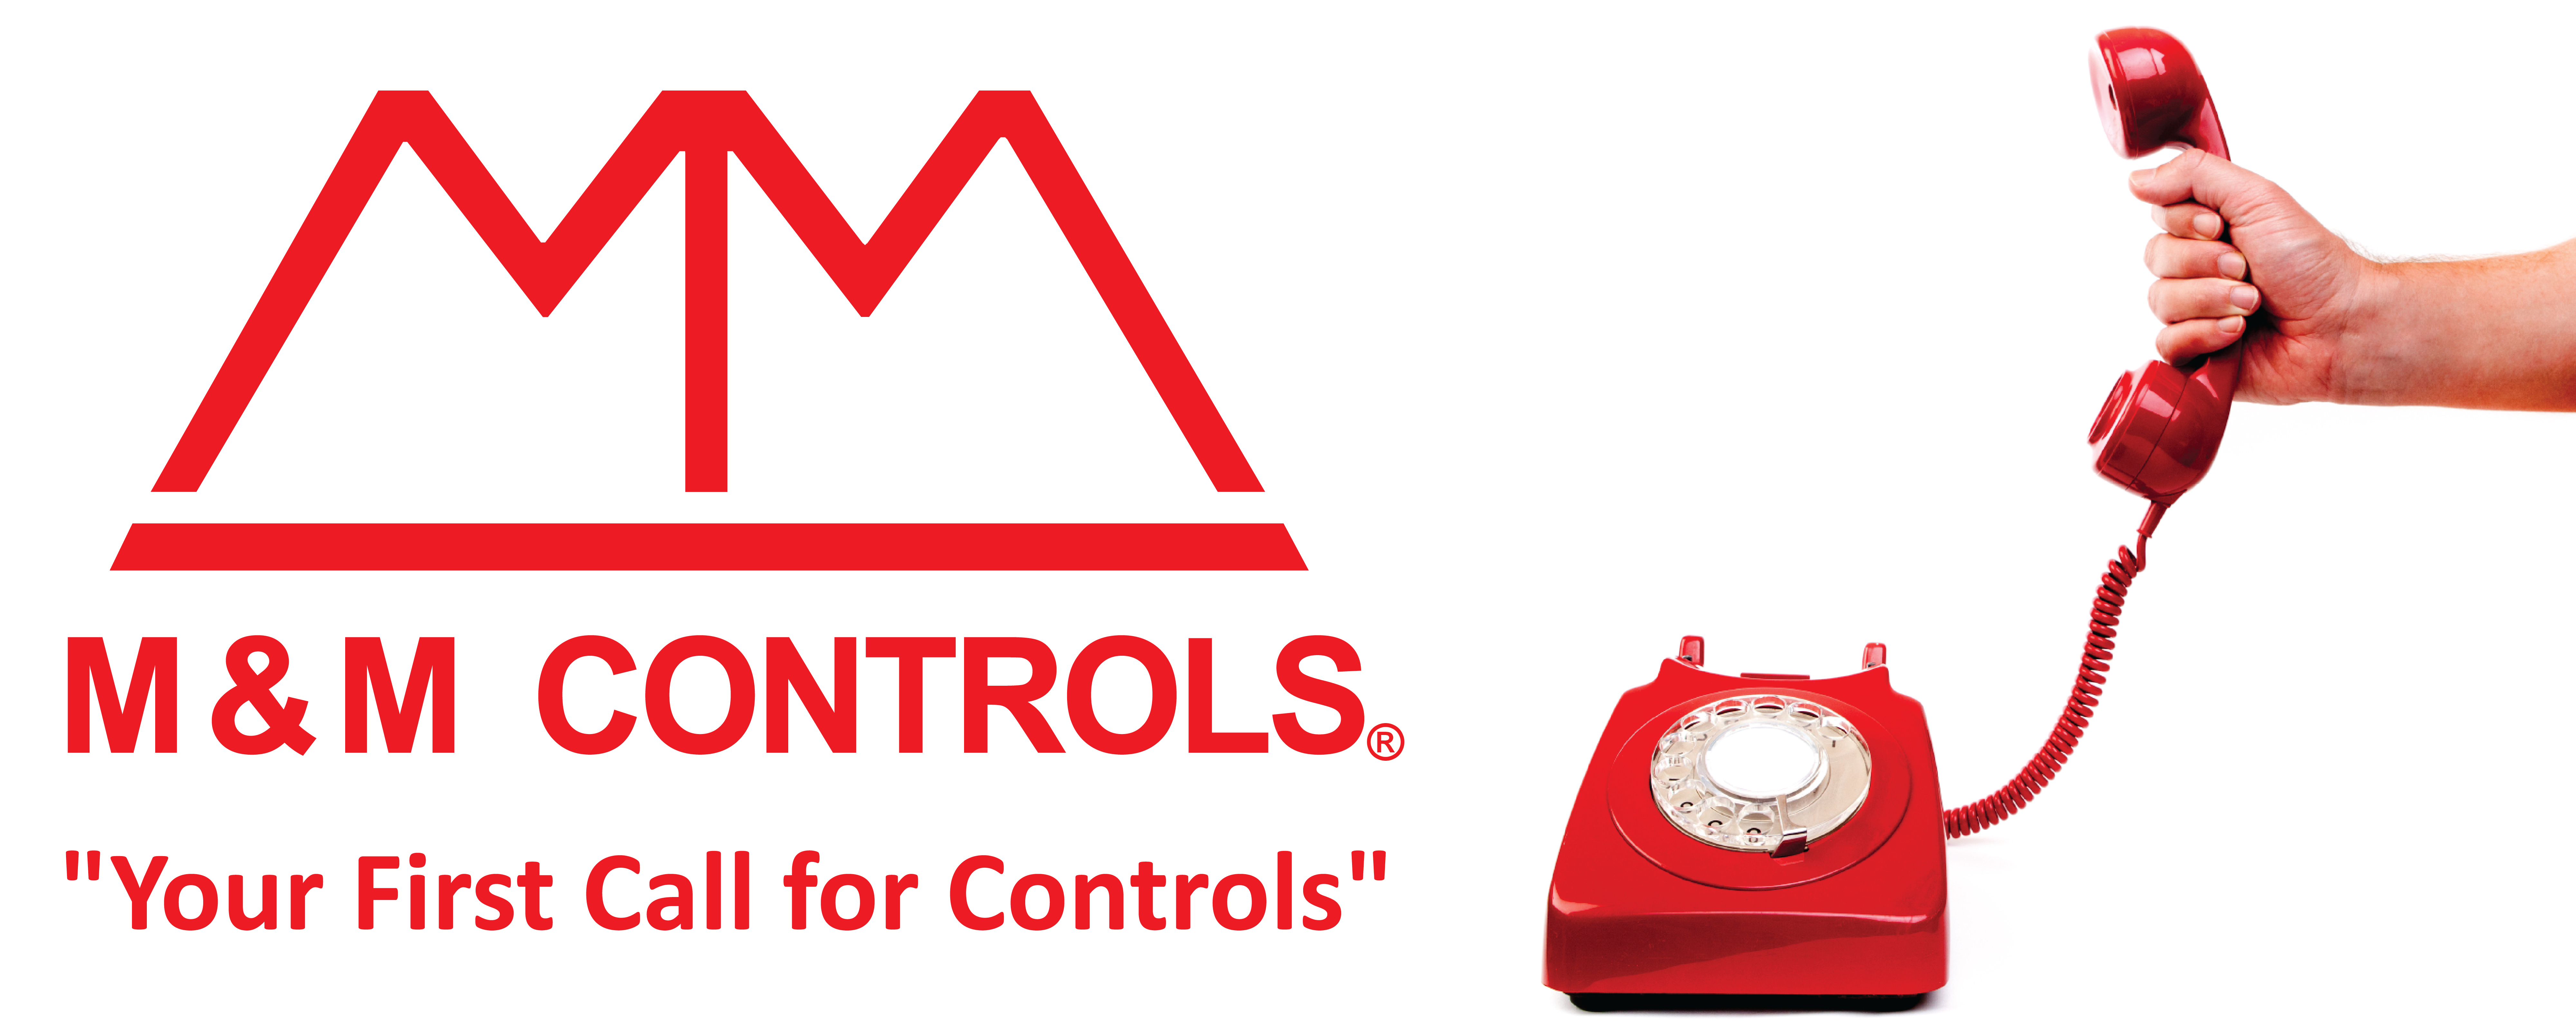 M&M Controls Sliders-03